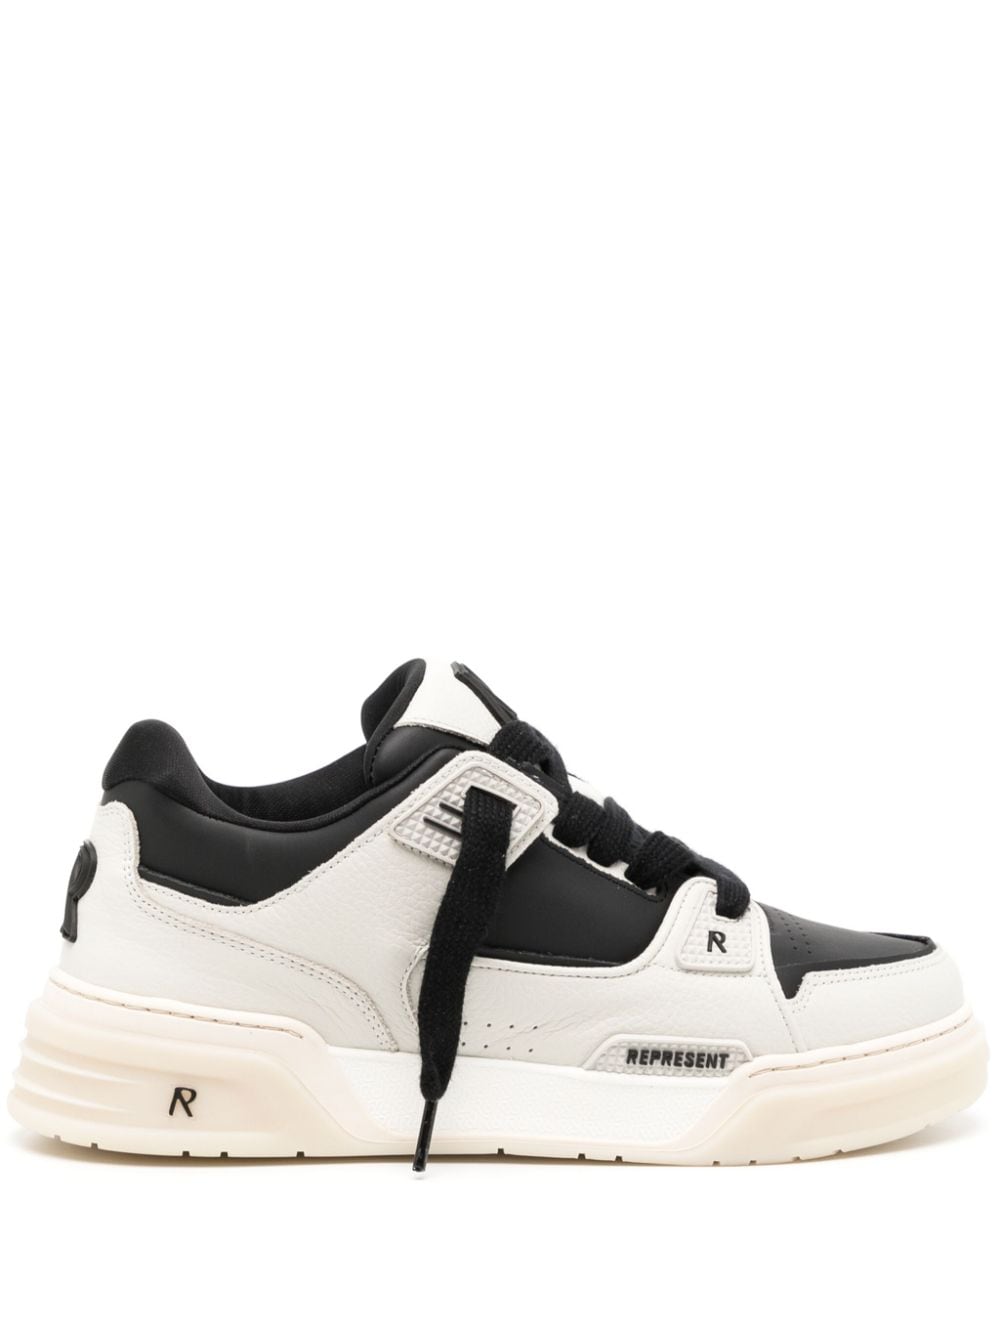 Represent Apex 2.0 leather sneakers - White von Represent